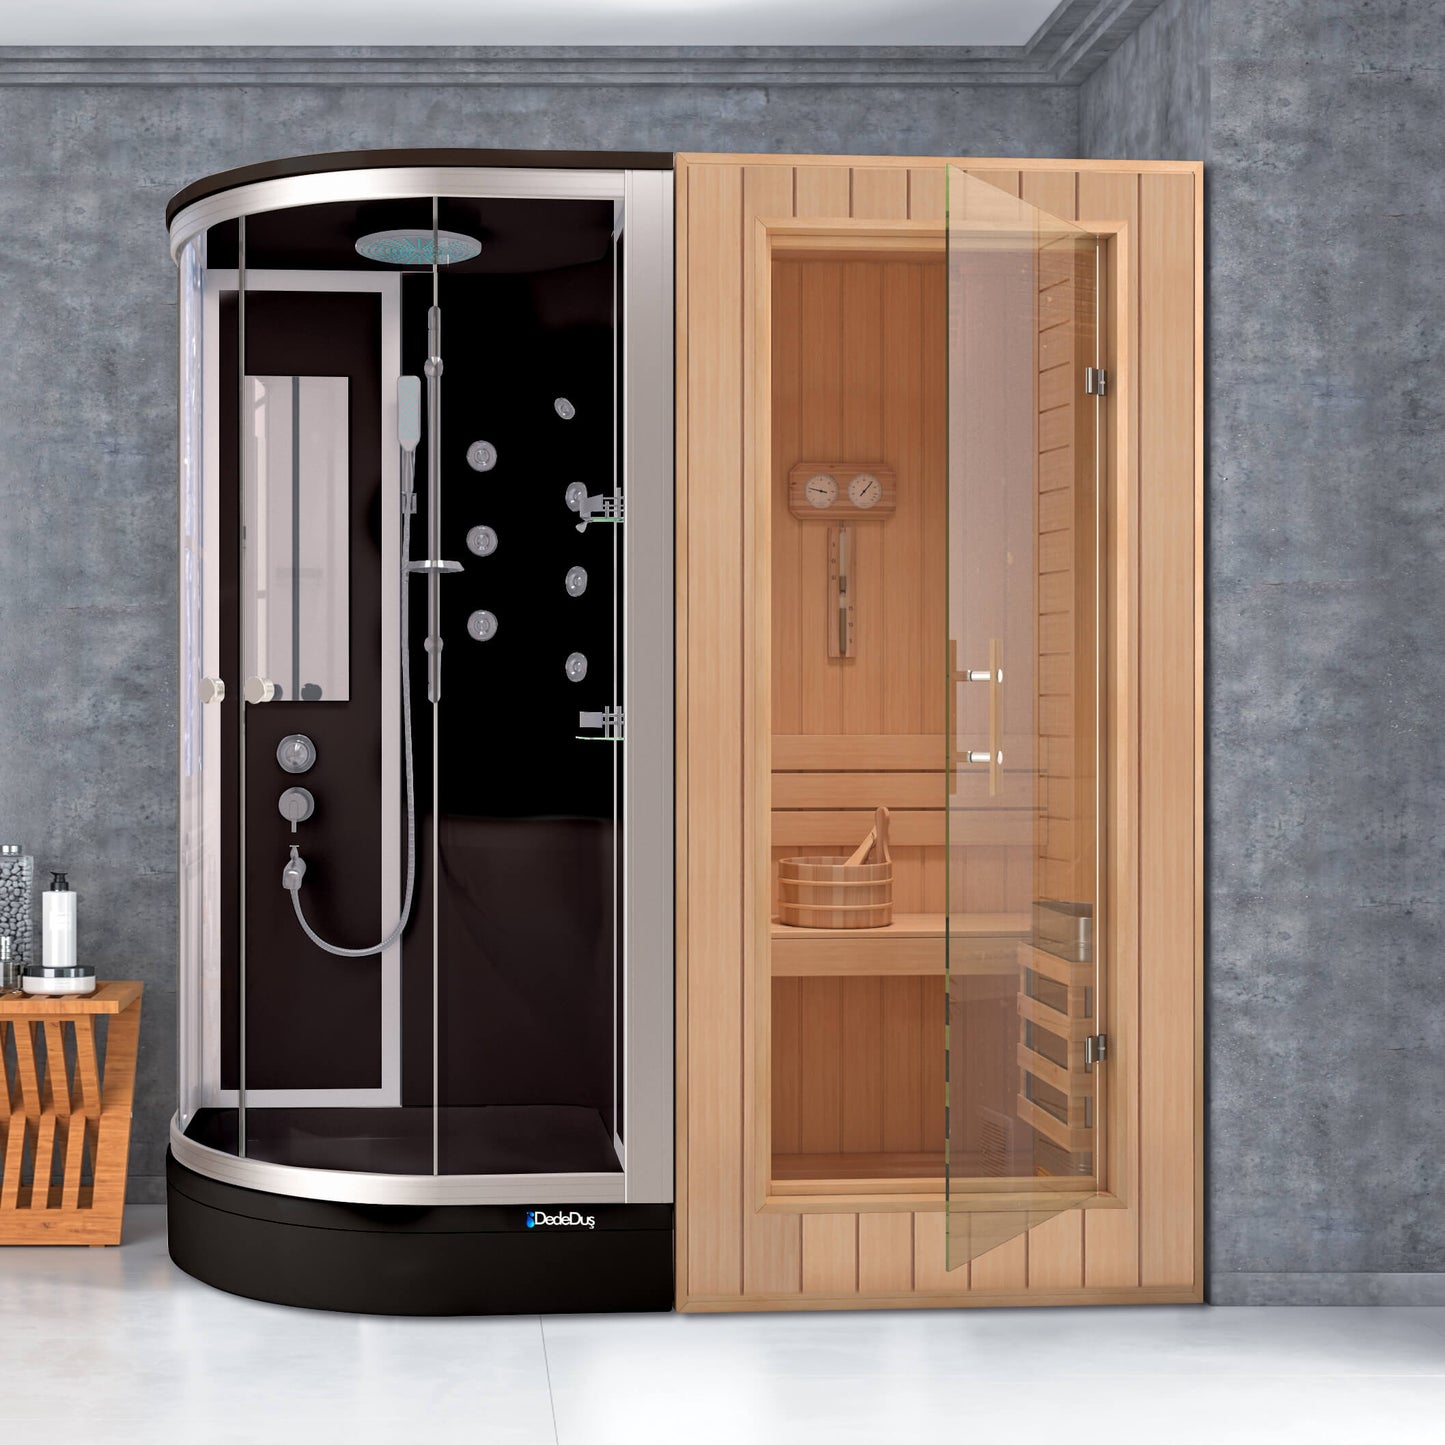 Siyah asimetrik duş tekneli kompakt duşakabinli ev tipi sauna, Dede Duş, Çengelköy, Acıbadem, Koşuyolu